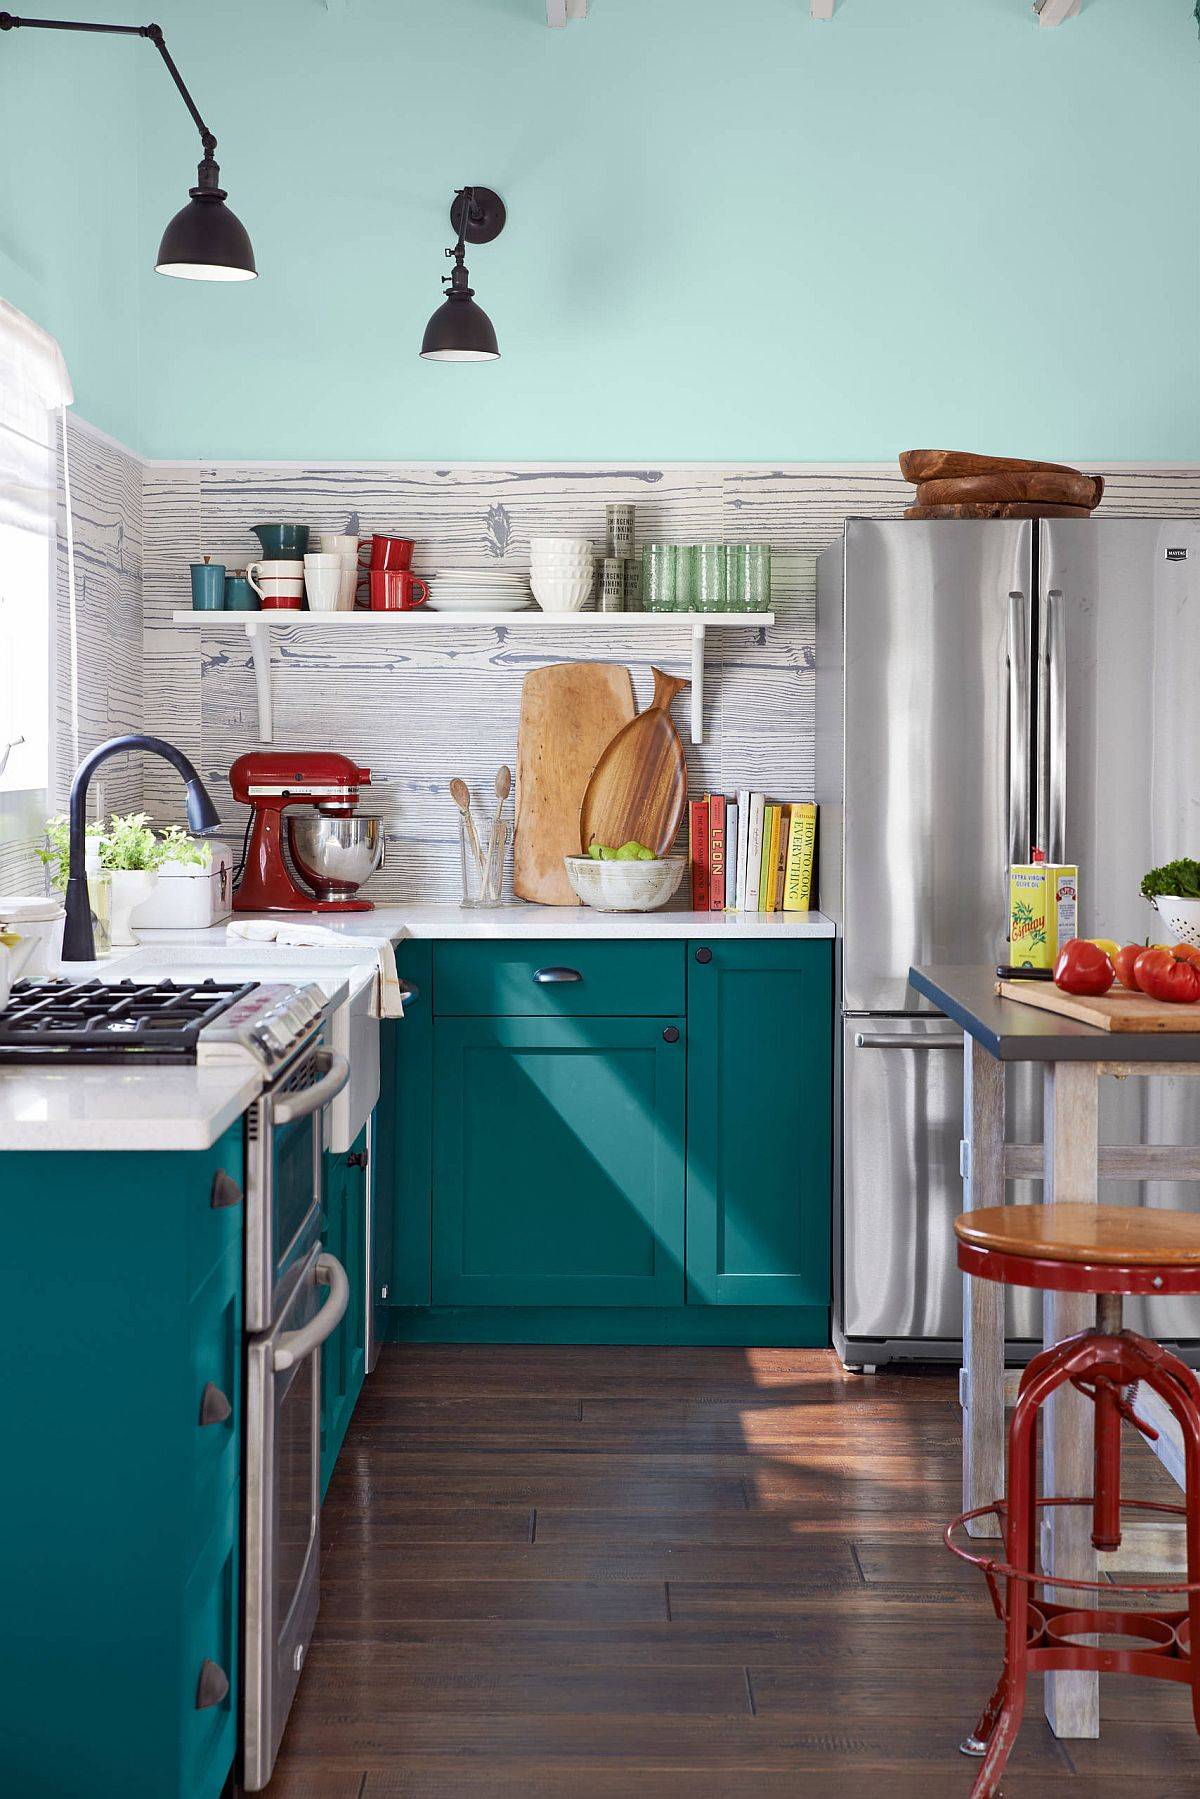 Sắc xanh ngọc lam từ hệ tủ bếp liền mạch, đồng điệu với mảng tường phía trên, mang đến vẻ thanh lịch, hấp dẫn cho phòng bếp.